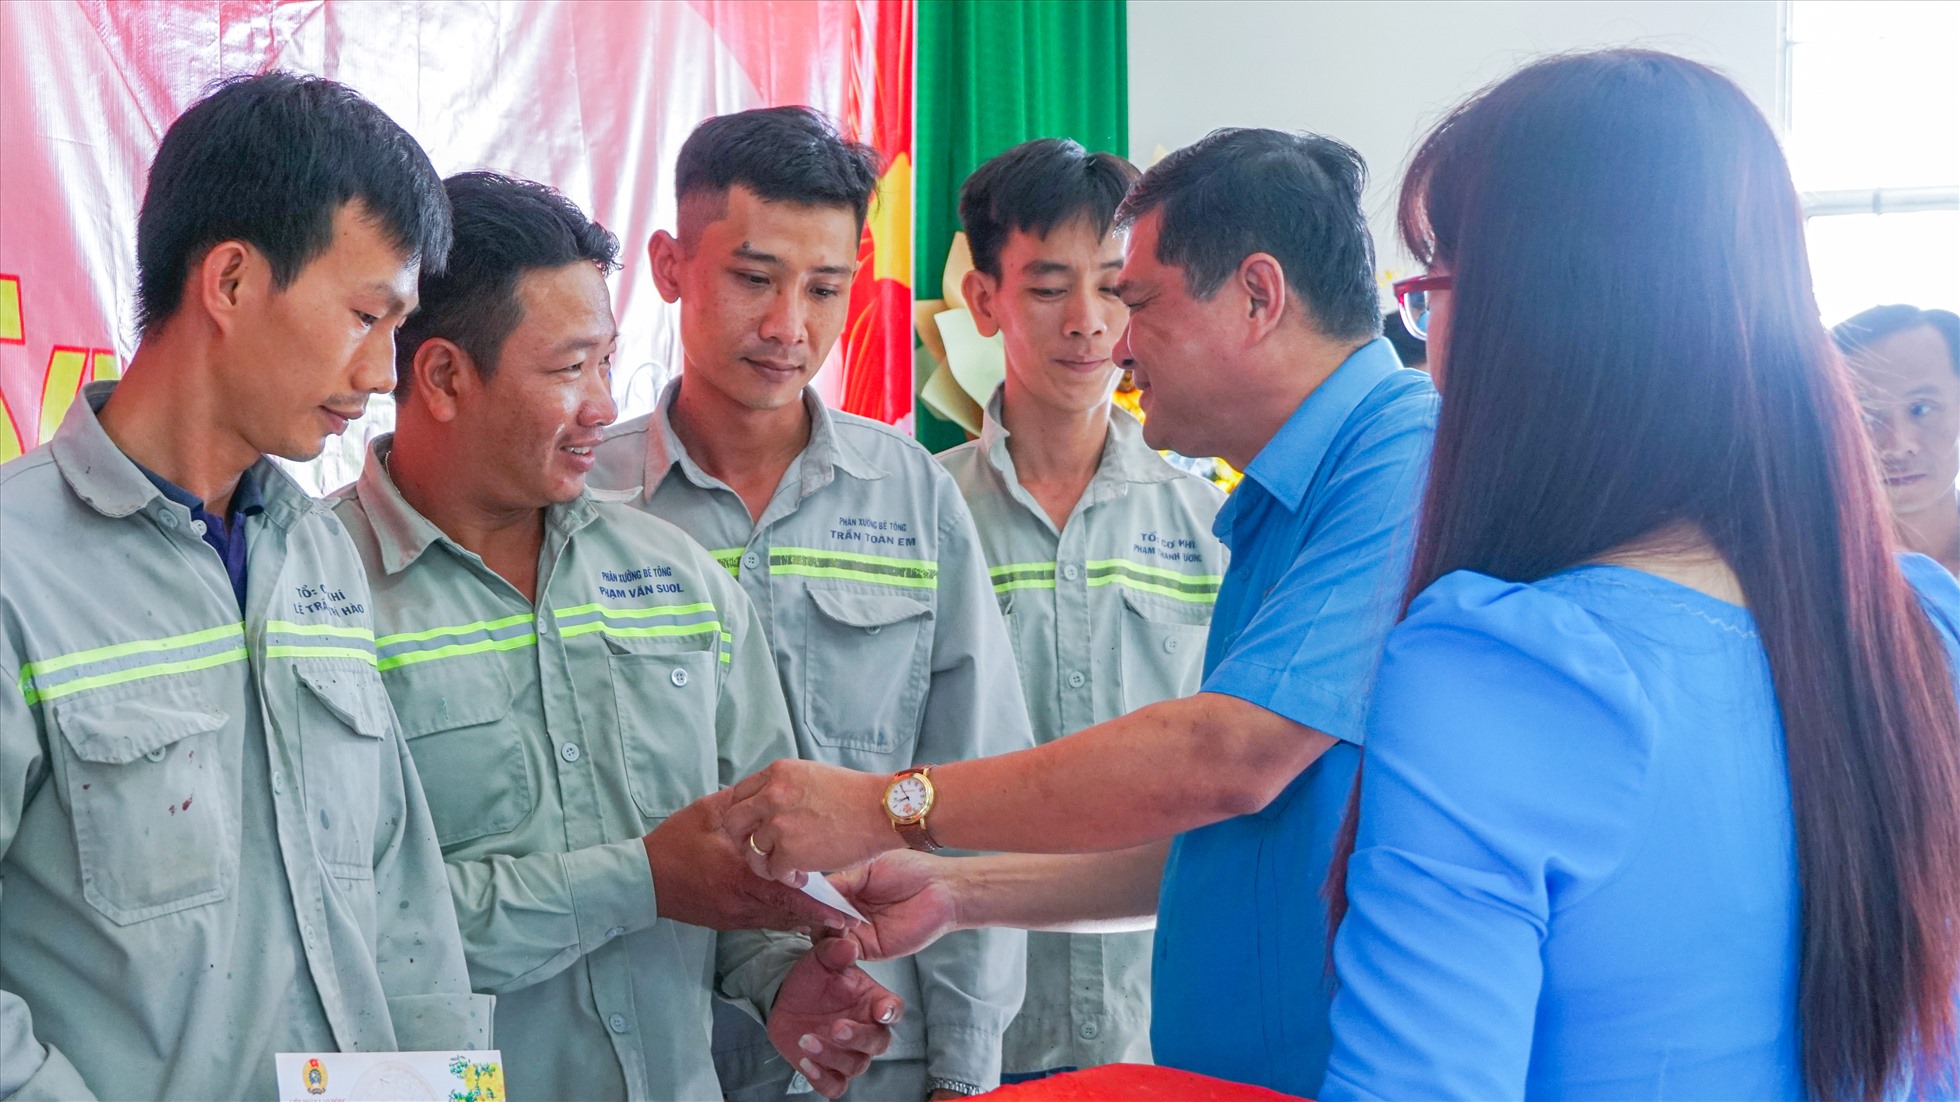 Chủ tịch LĐLĐ tỉnh Hậu Giang Nguyễn Văn Bảy trao quà cho đoàn viên, người lao động. Ảnh: Tạ Quang.